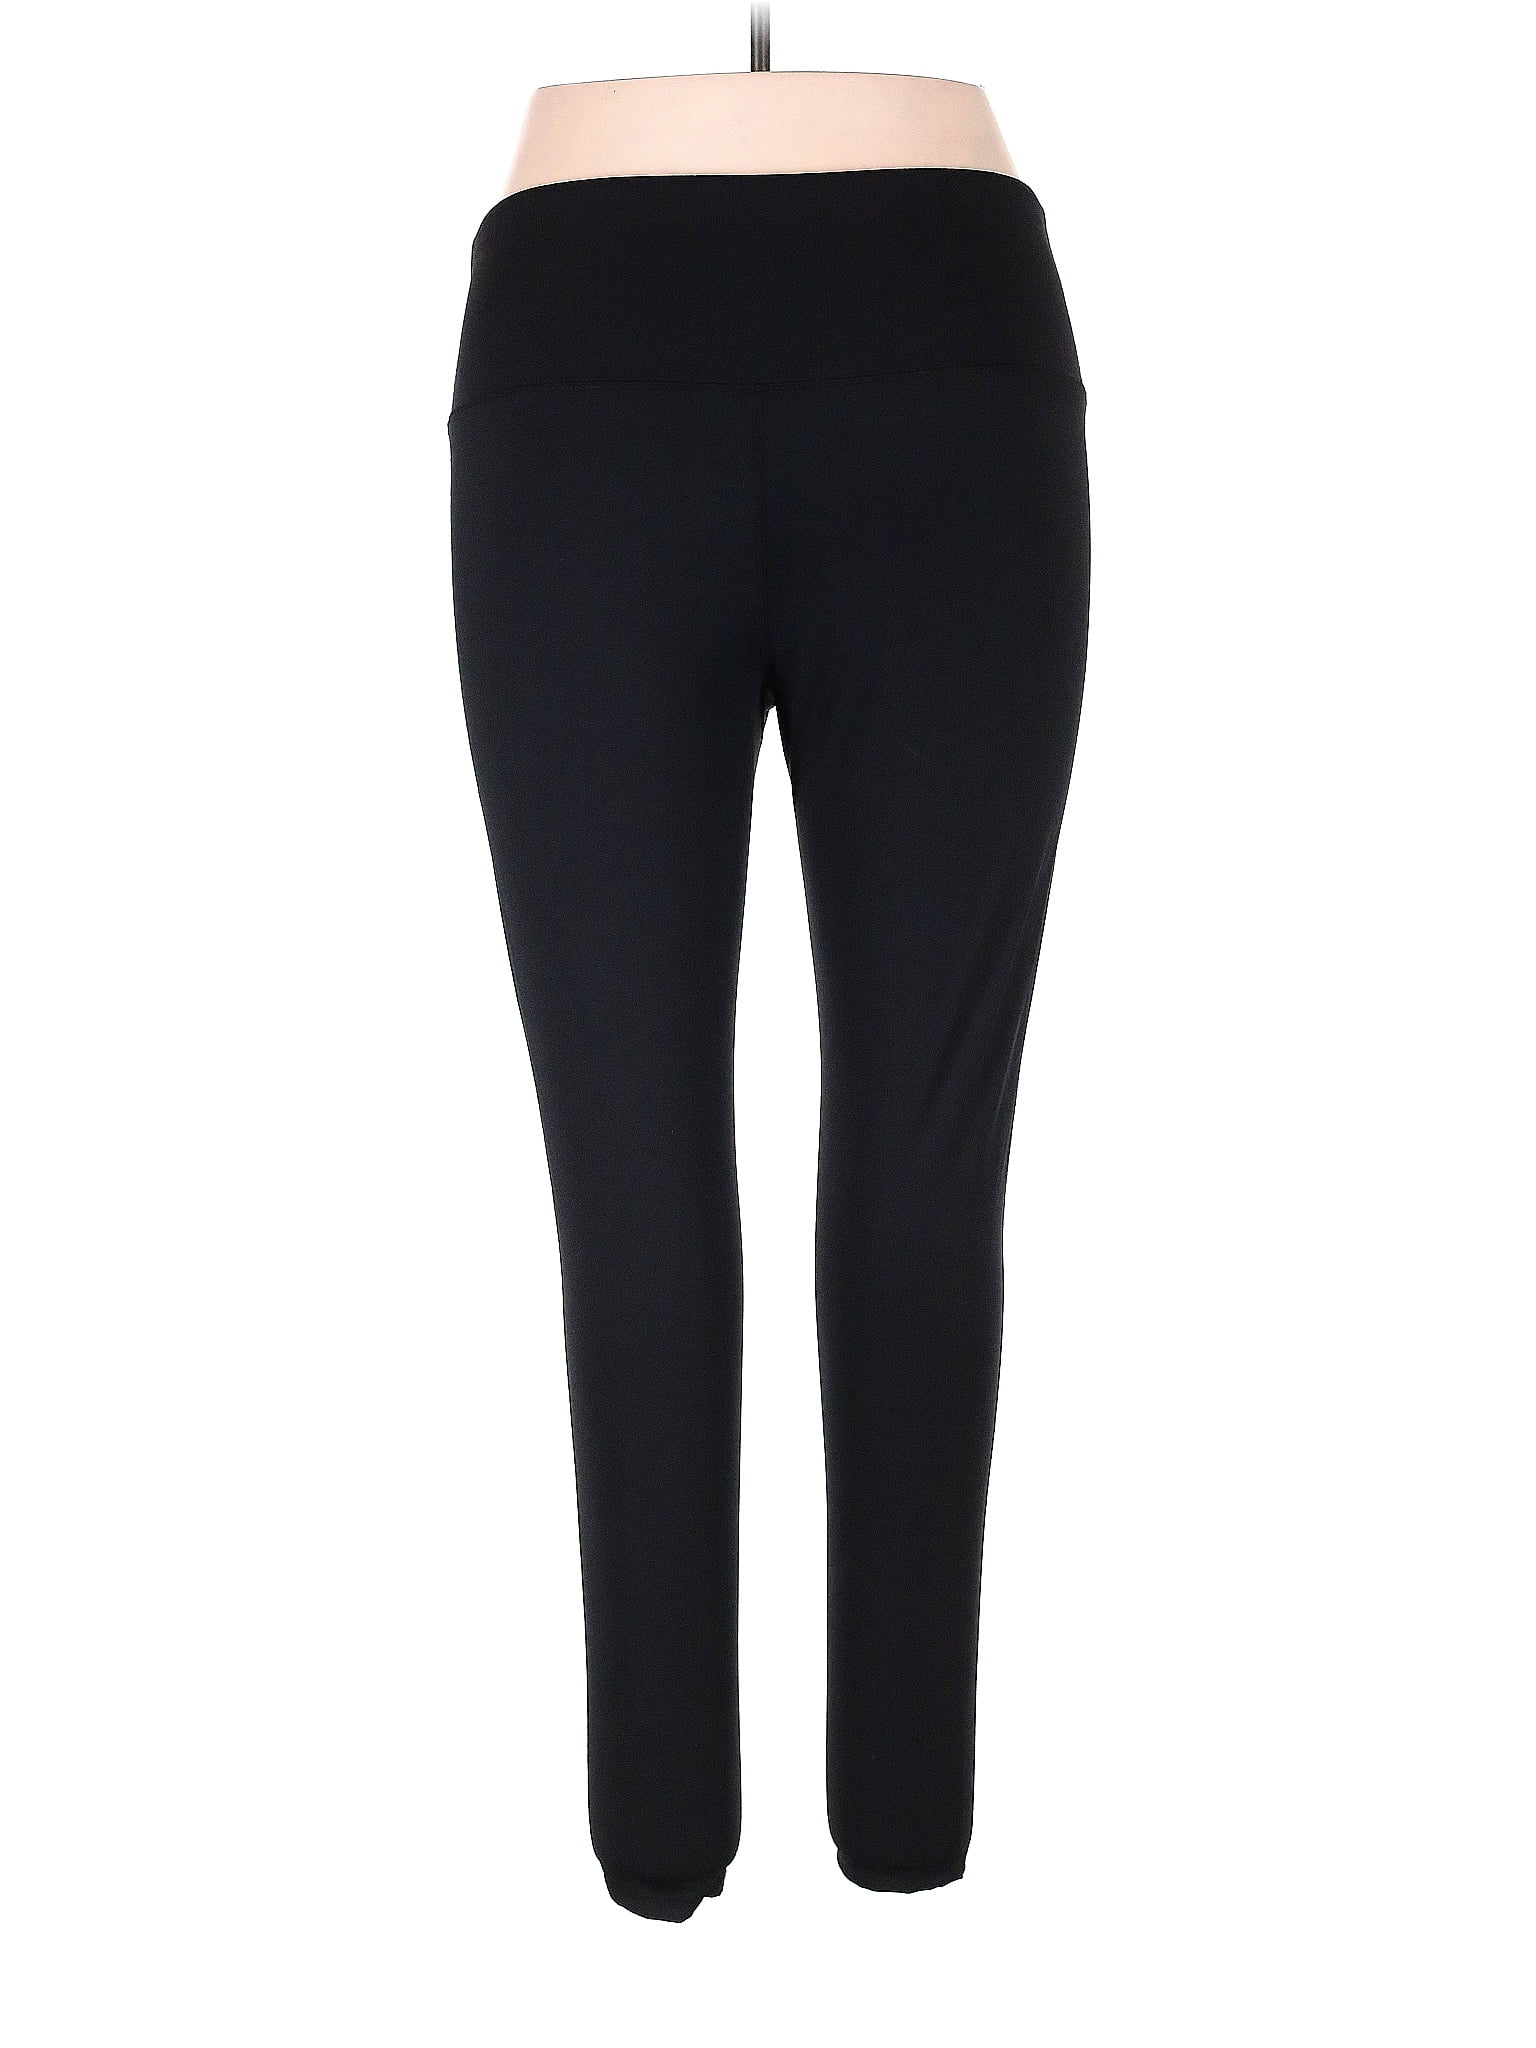 Oalka Black Active Pants Size XL - 50% off